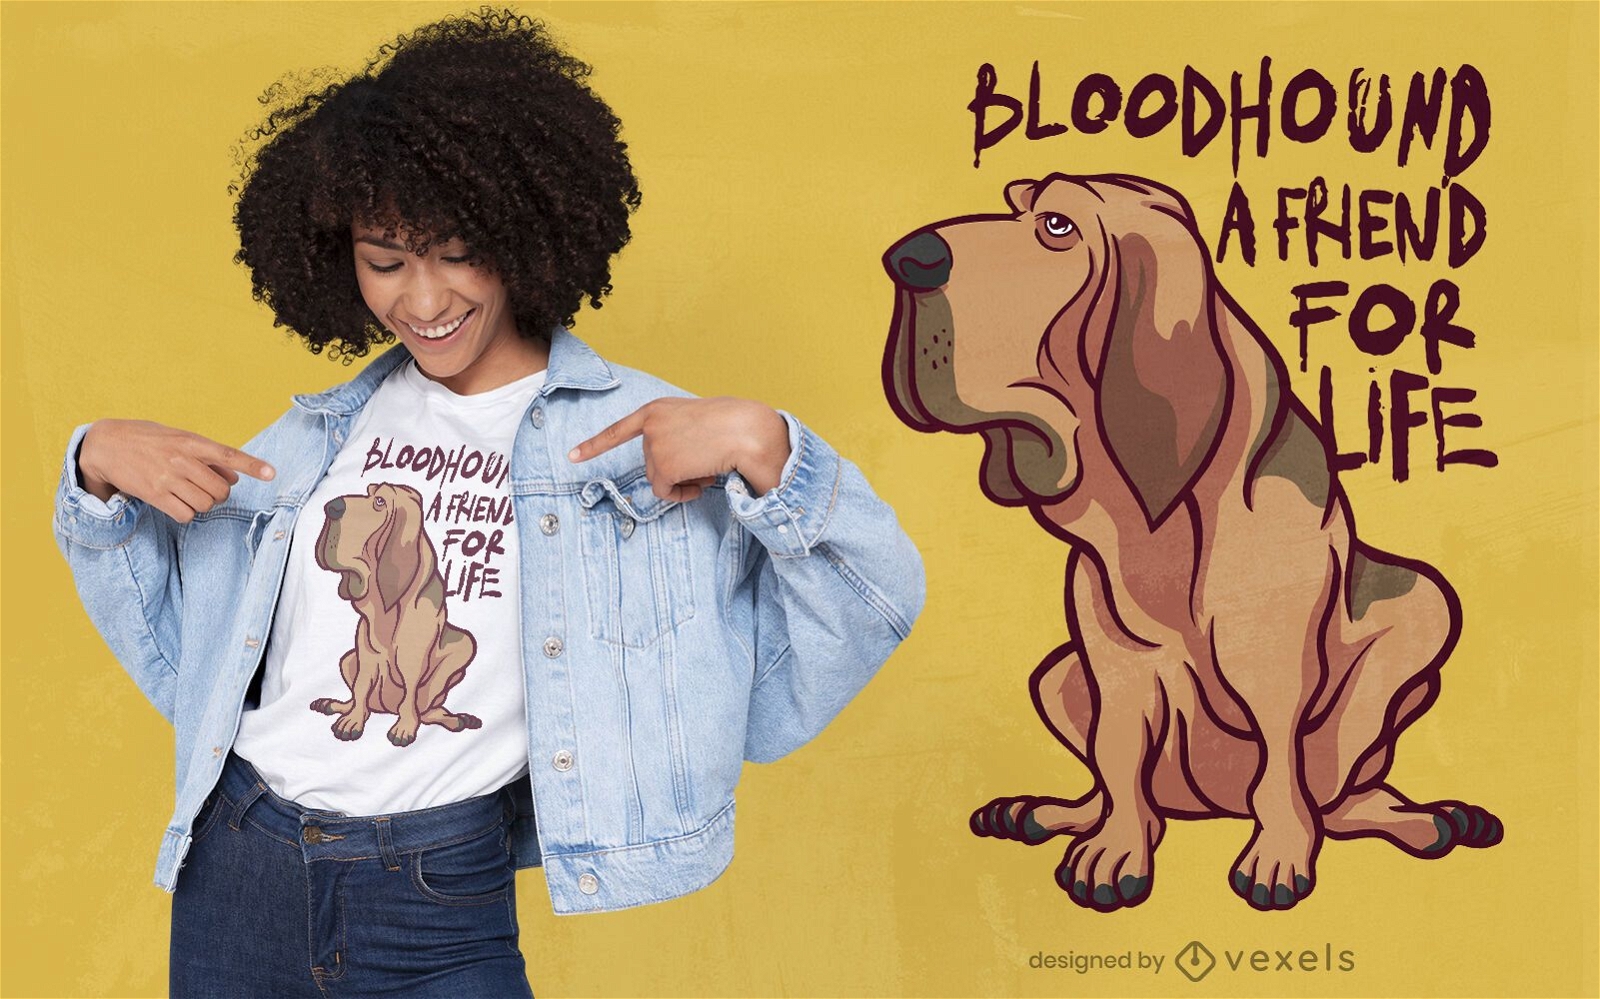 Bloodhound dog friend t-shirt design